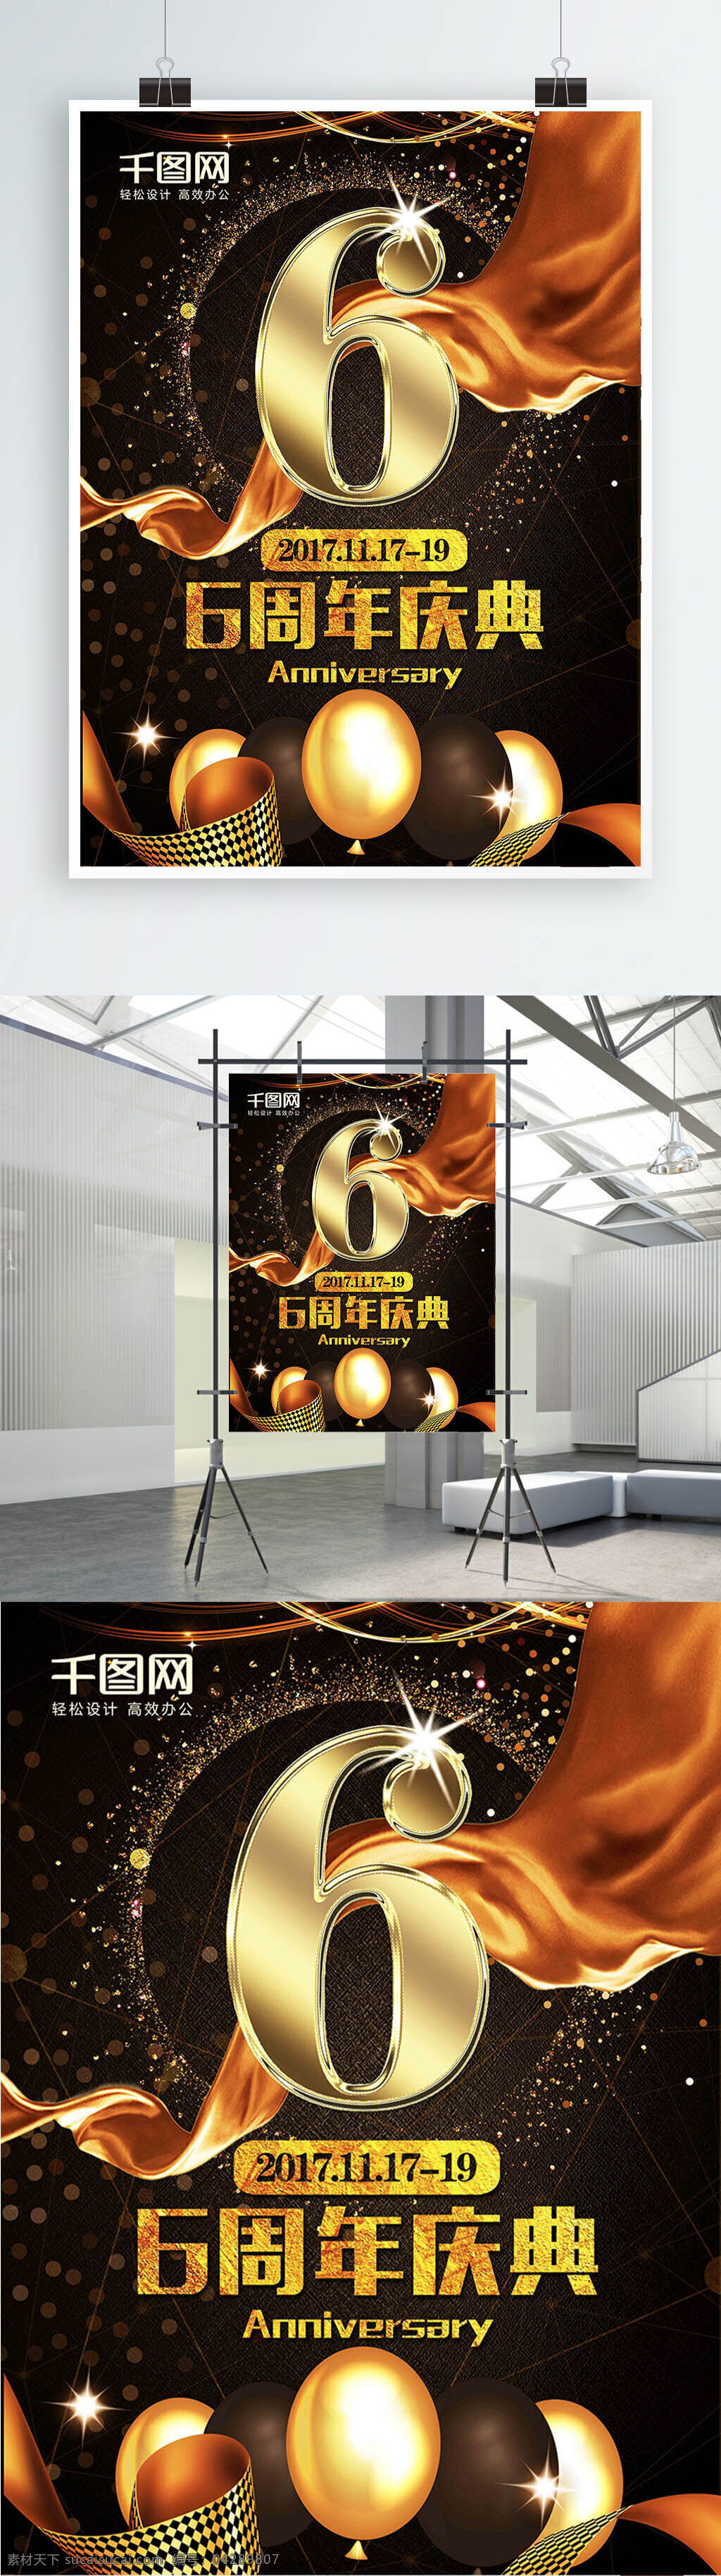 金色 金 蛋 质感 周年庆典 海报 展板 6周年庆背景 盛大 开业 气球 金属字 黑色大气 金色丝带 金色飘带